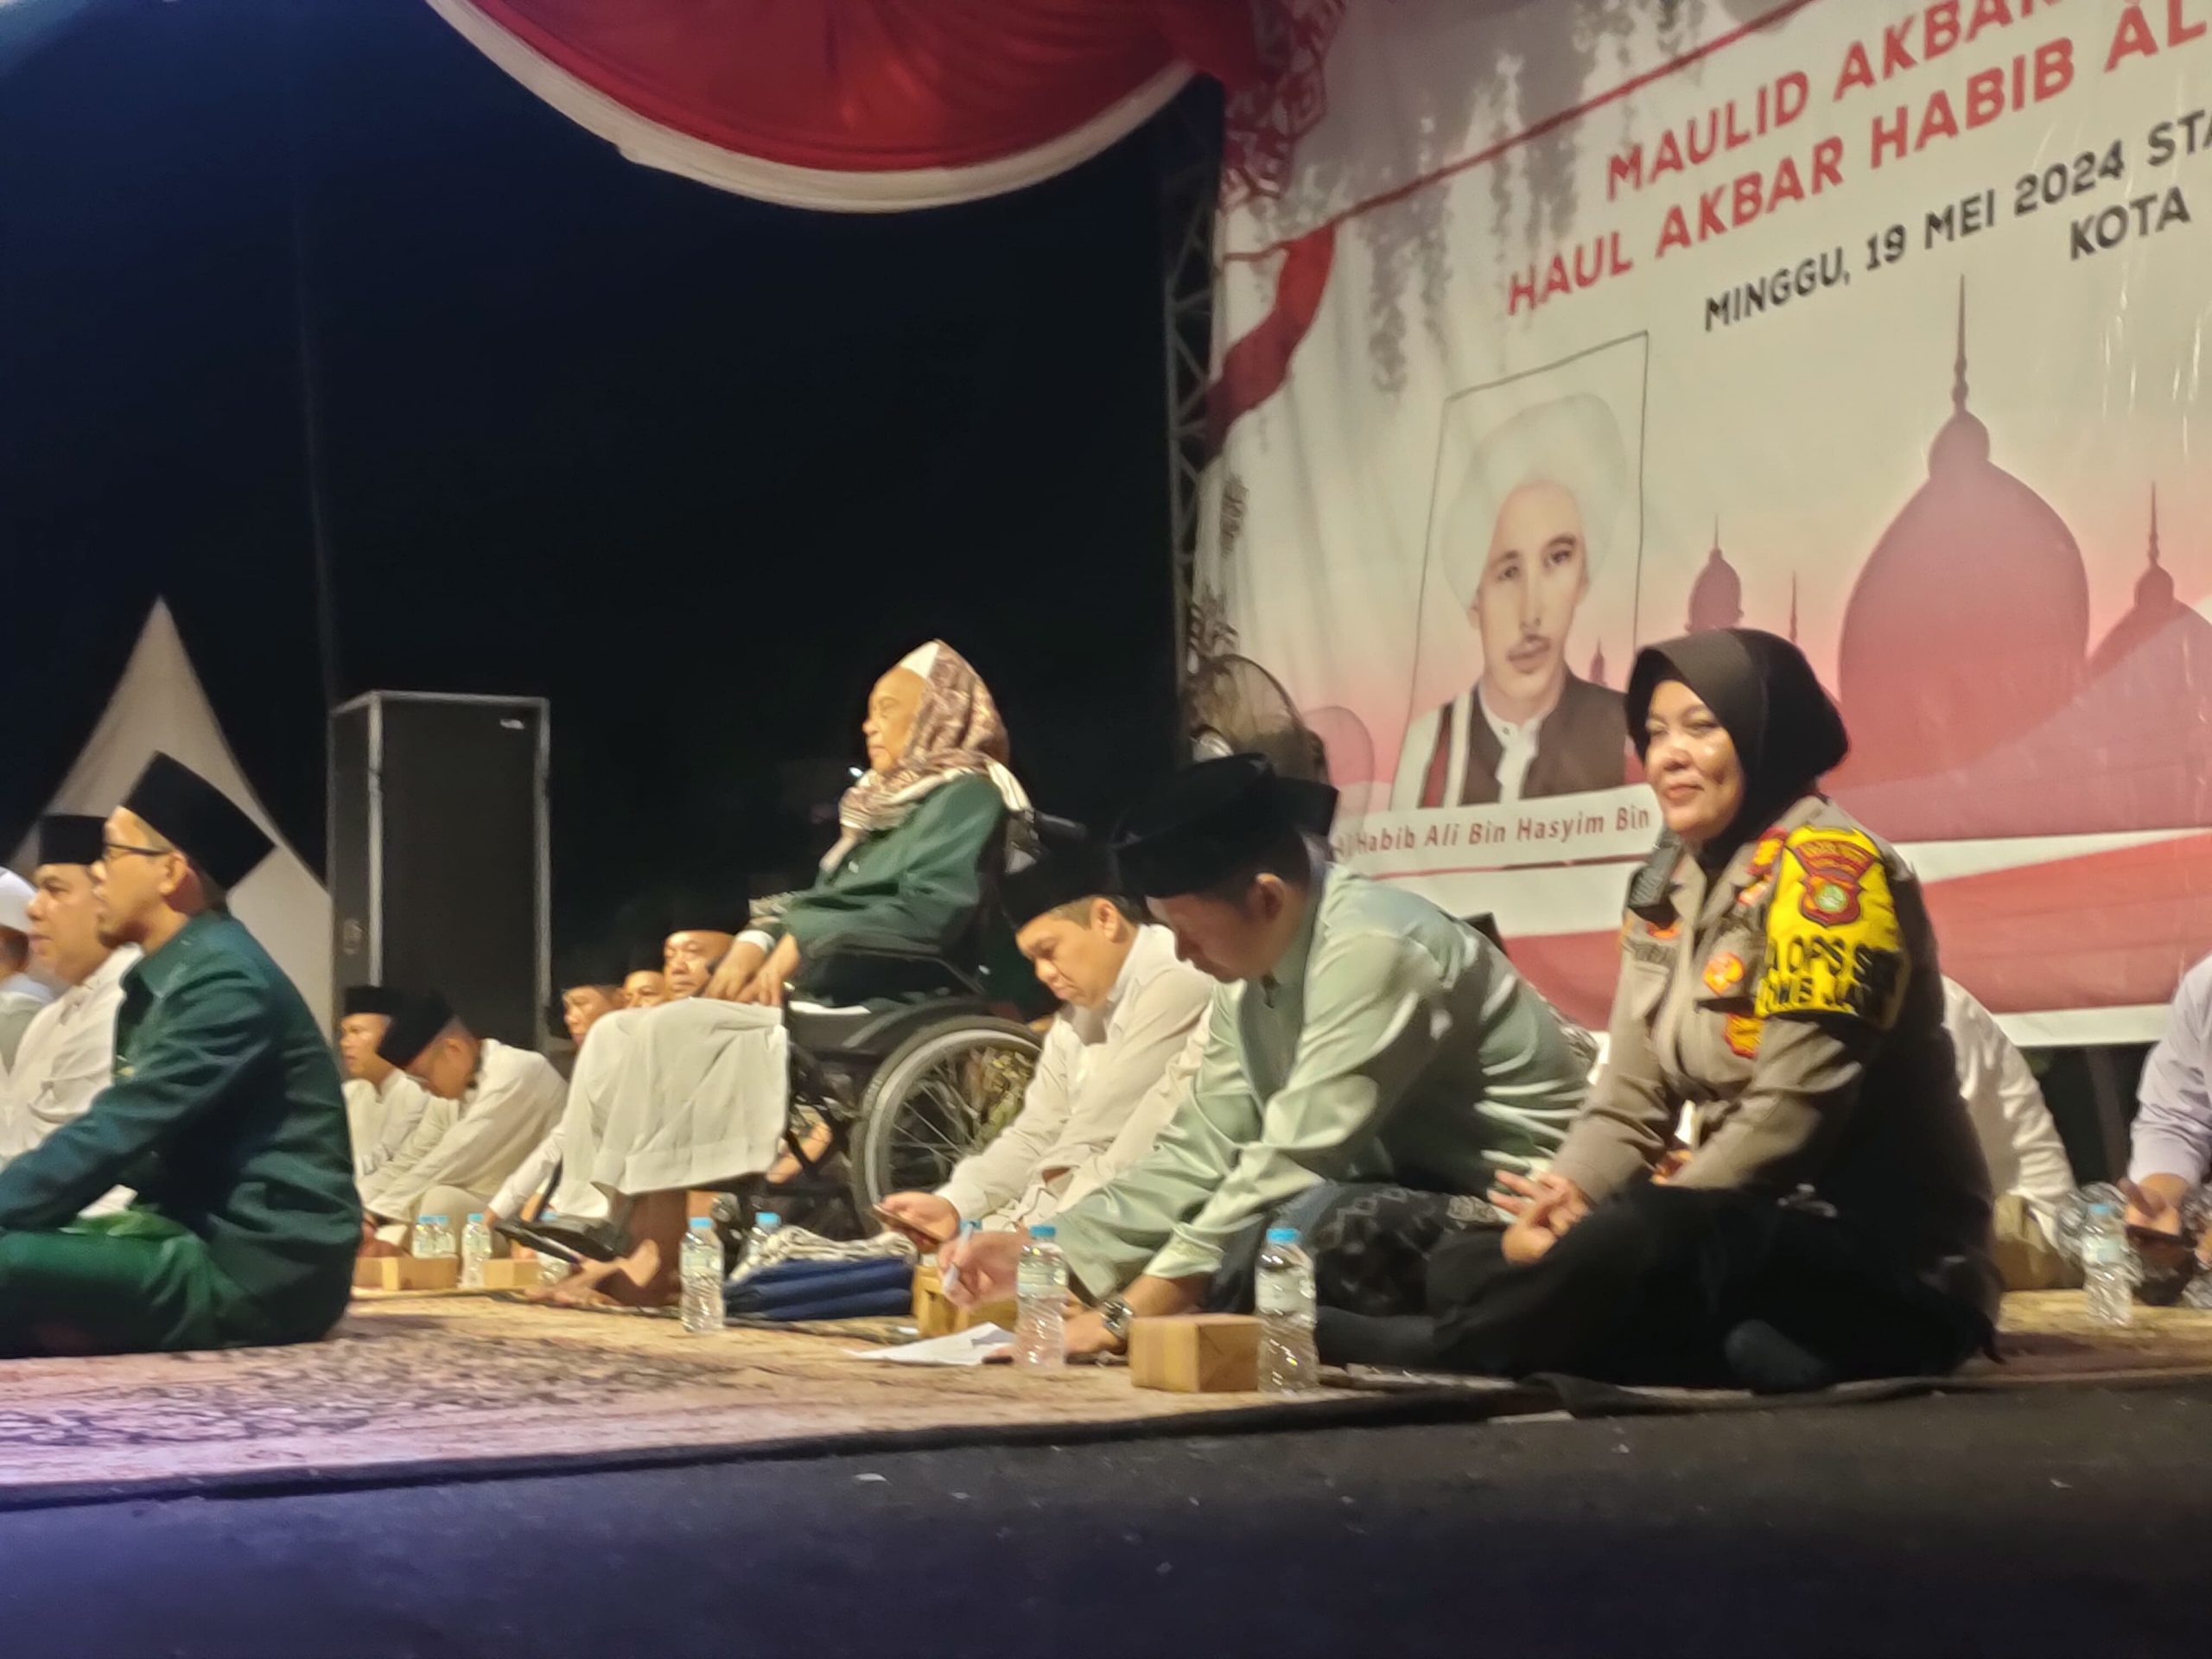 Kapolsek Bantar Gebang Memastikan Keamanan Peringatan Maulid Akbar dan Haul Habib Ali di Bekasi